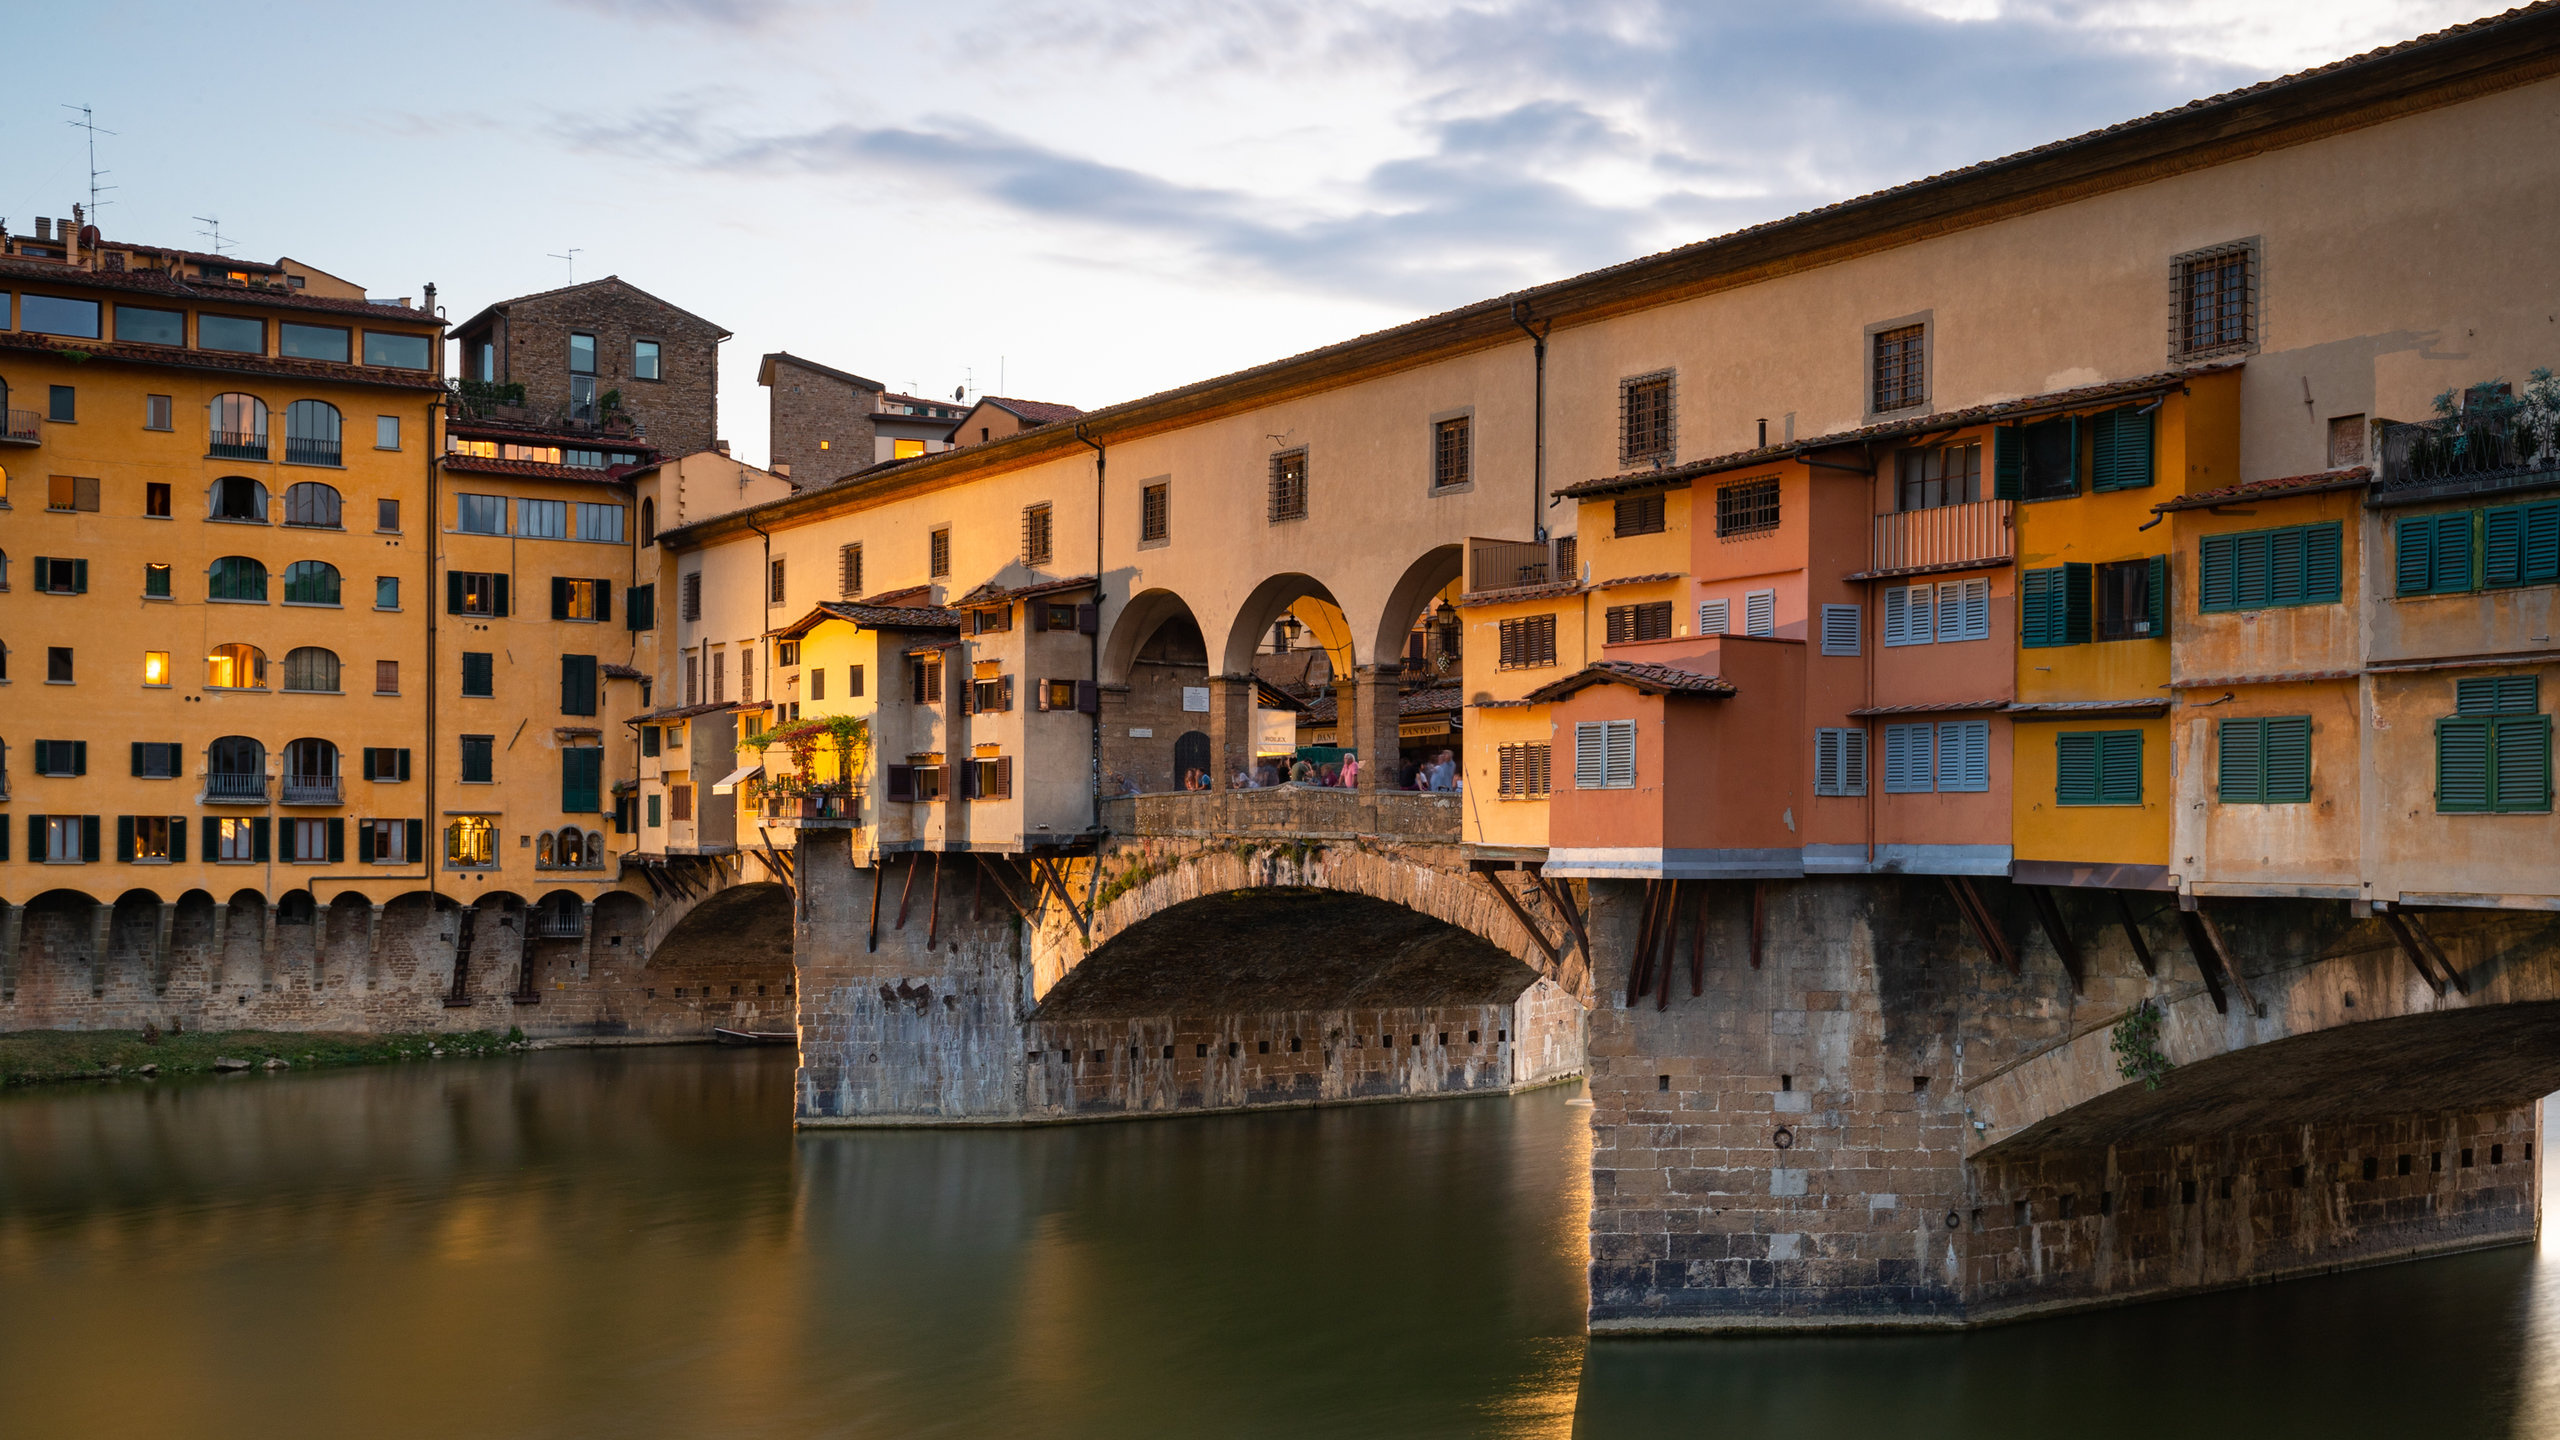 Ferienwohnung Ponte Vecchio in Florenz, 2560x1440 HD Desktop